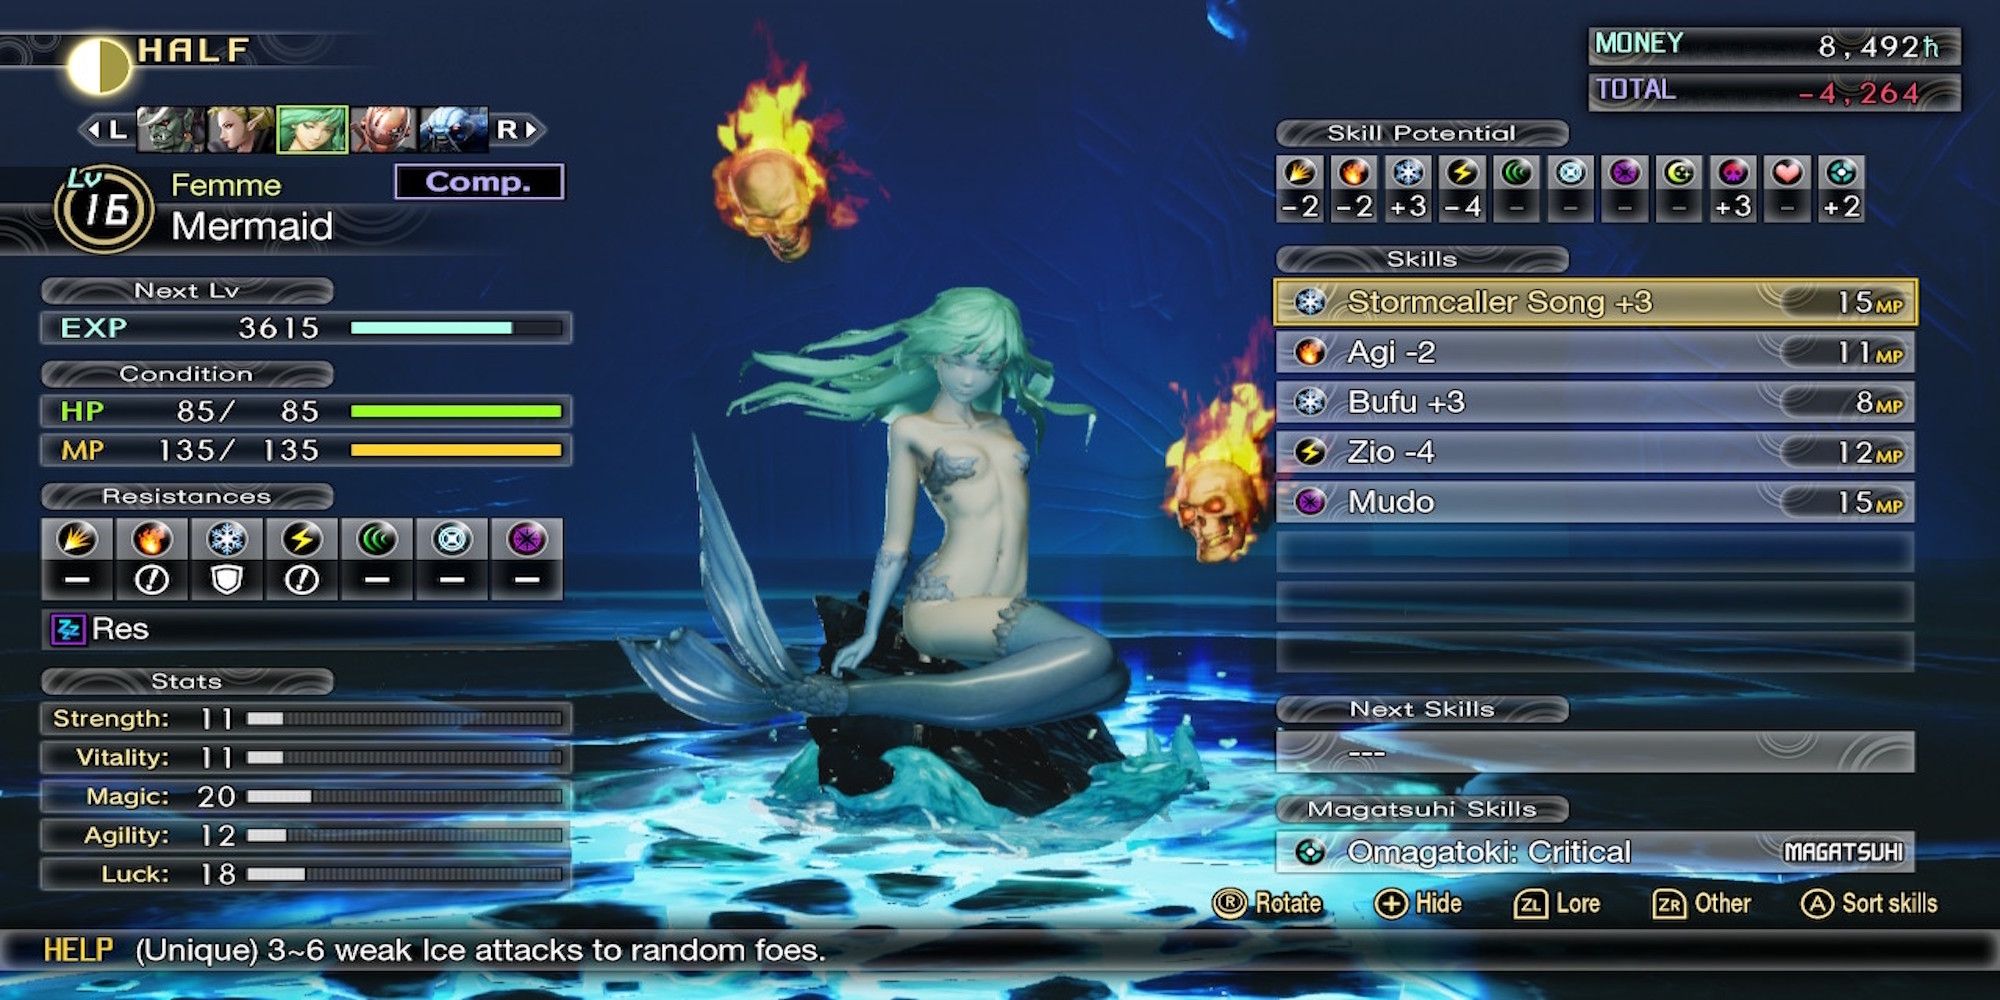 A Mermaid demon from Shin Megami Tensei 5